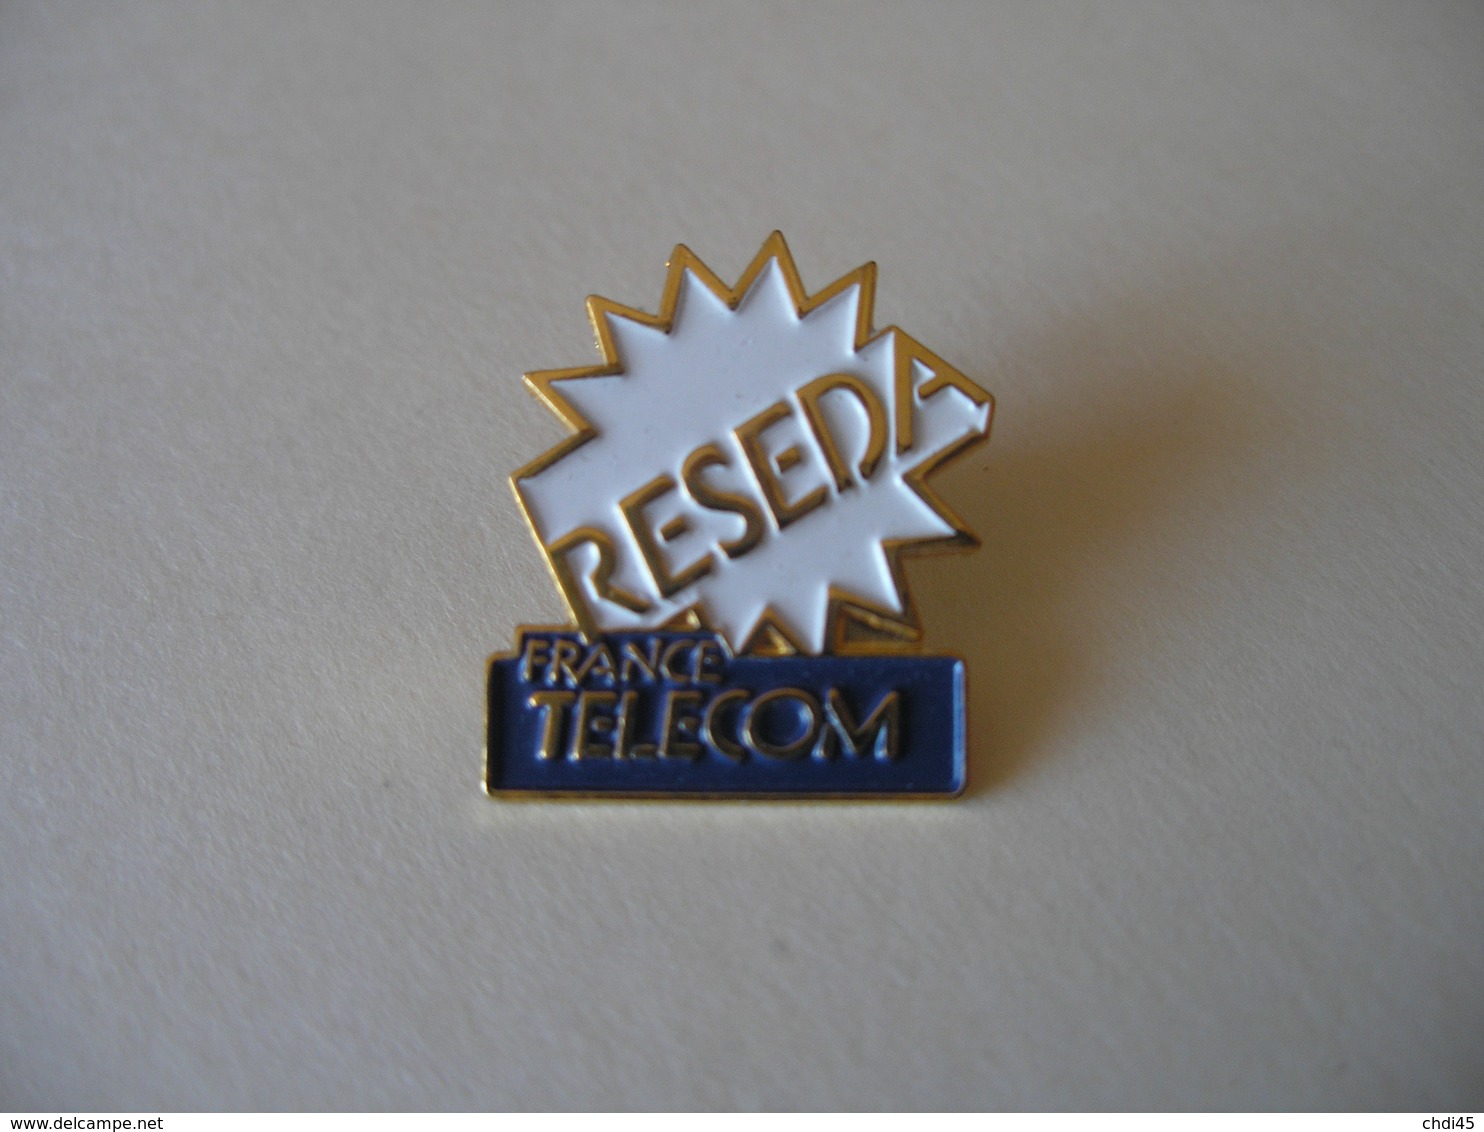 FRANCE TELECOM RESEDA - France Telecom